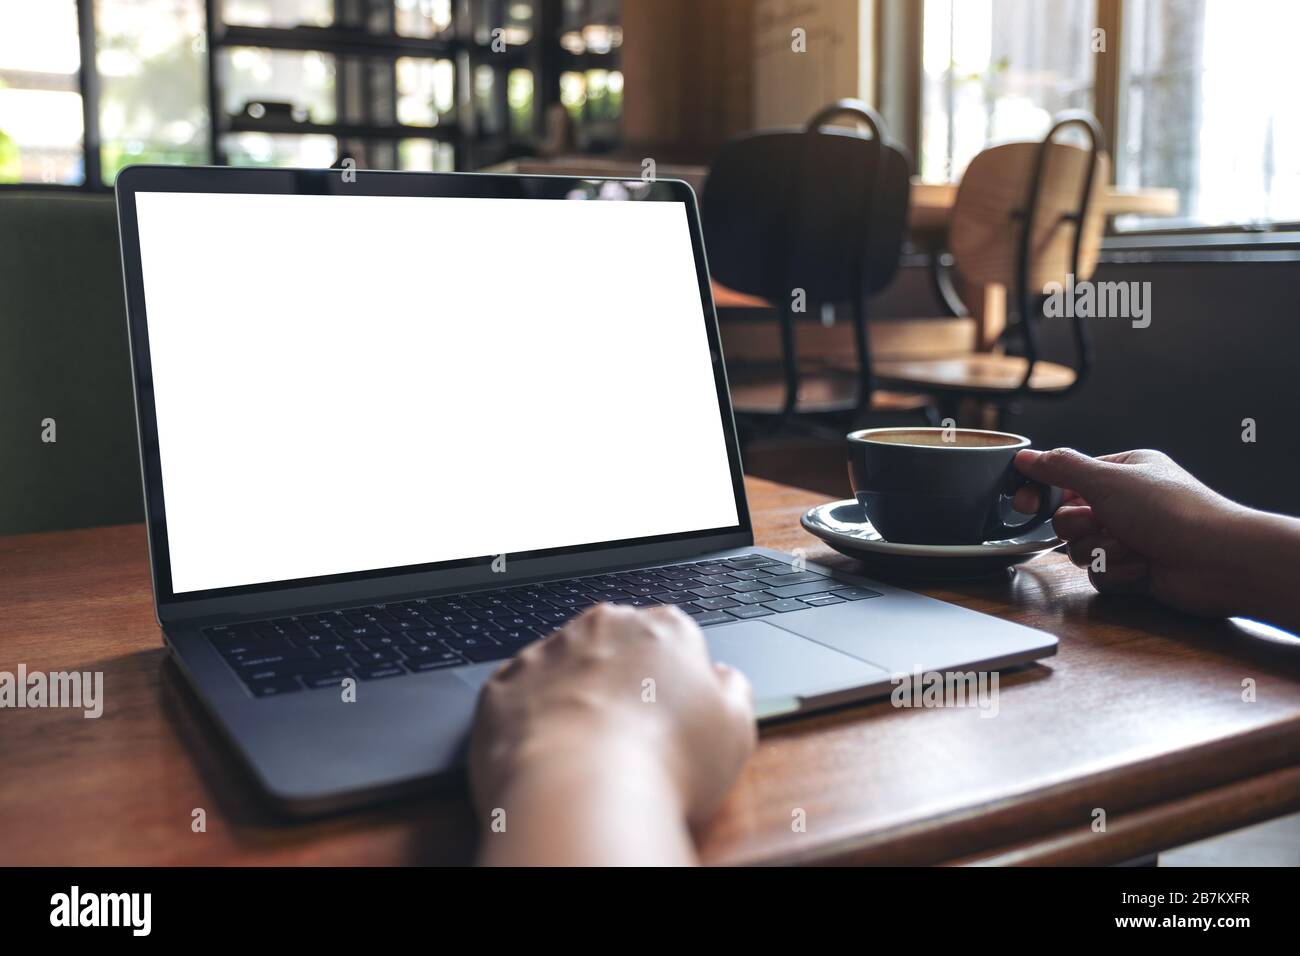 Immersive image d'une femme à l'aide d'un ordinateur portable avec écran de  bureau blanc à blanc tout en buvant un café chaud sur la table en bois dans  la région de cafe